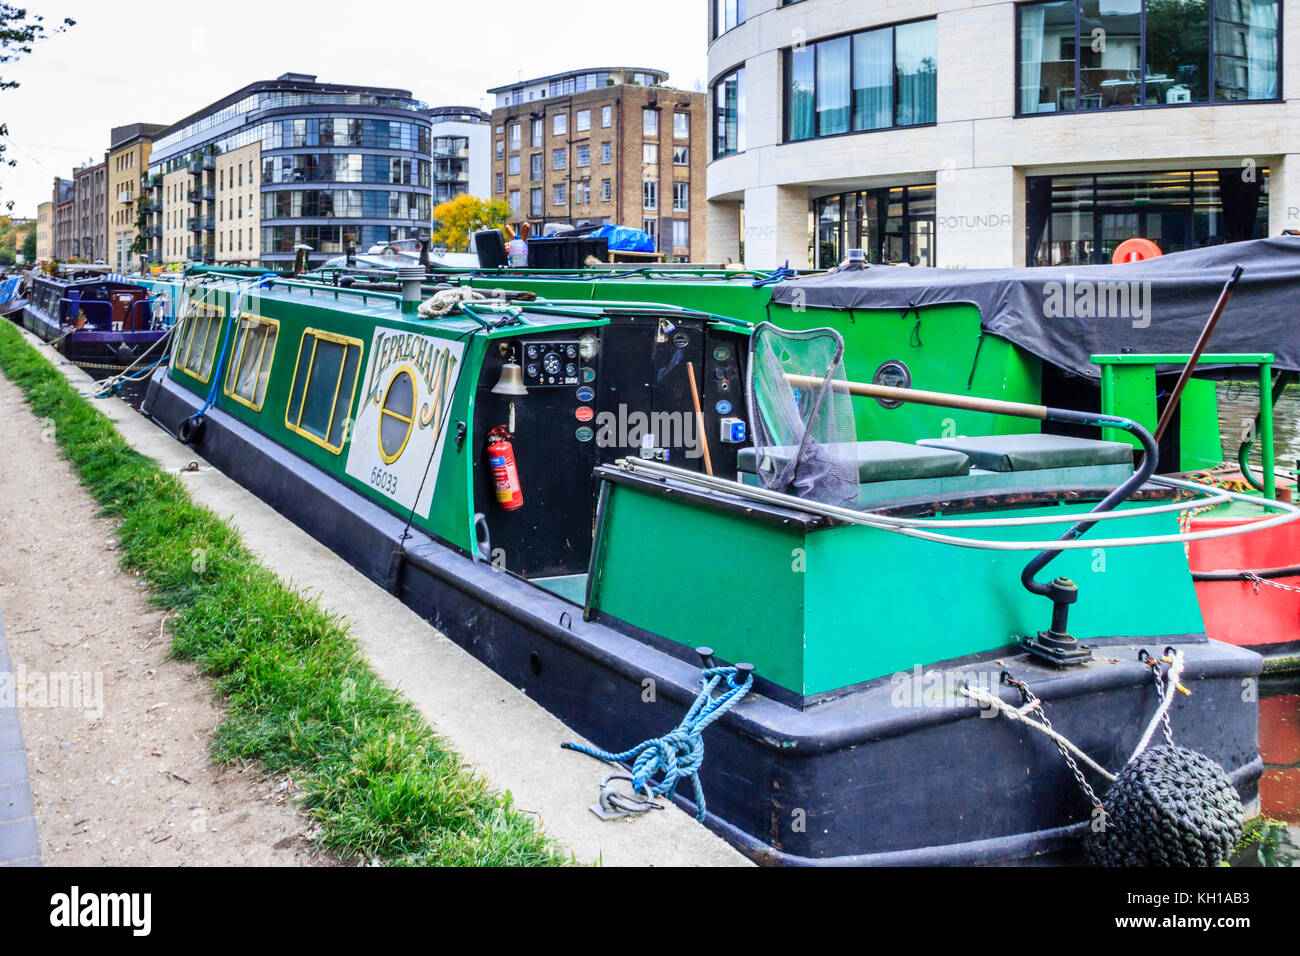 Amarré au bassin Battlebridge Narrowboats, King's Cross, Londres, Royaume-Uni, 2017 Banque D'Images